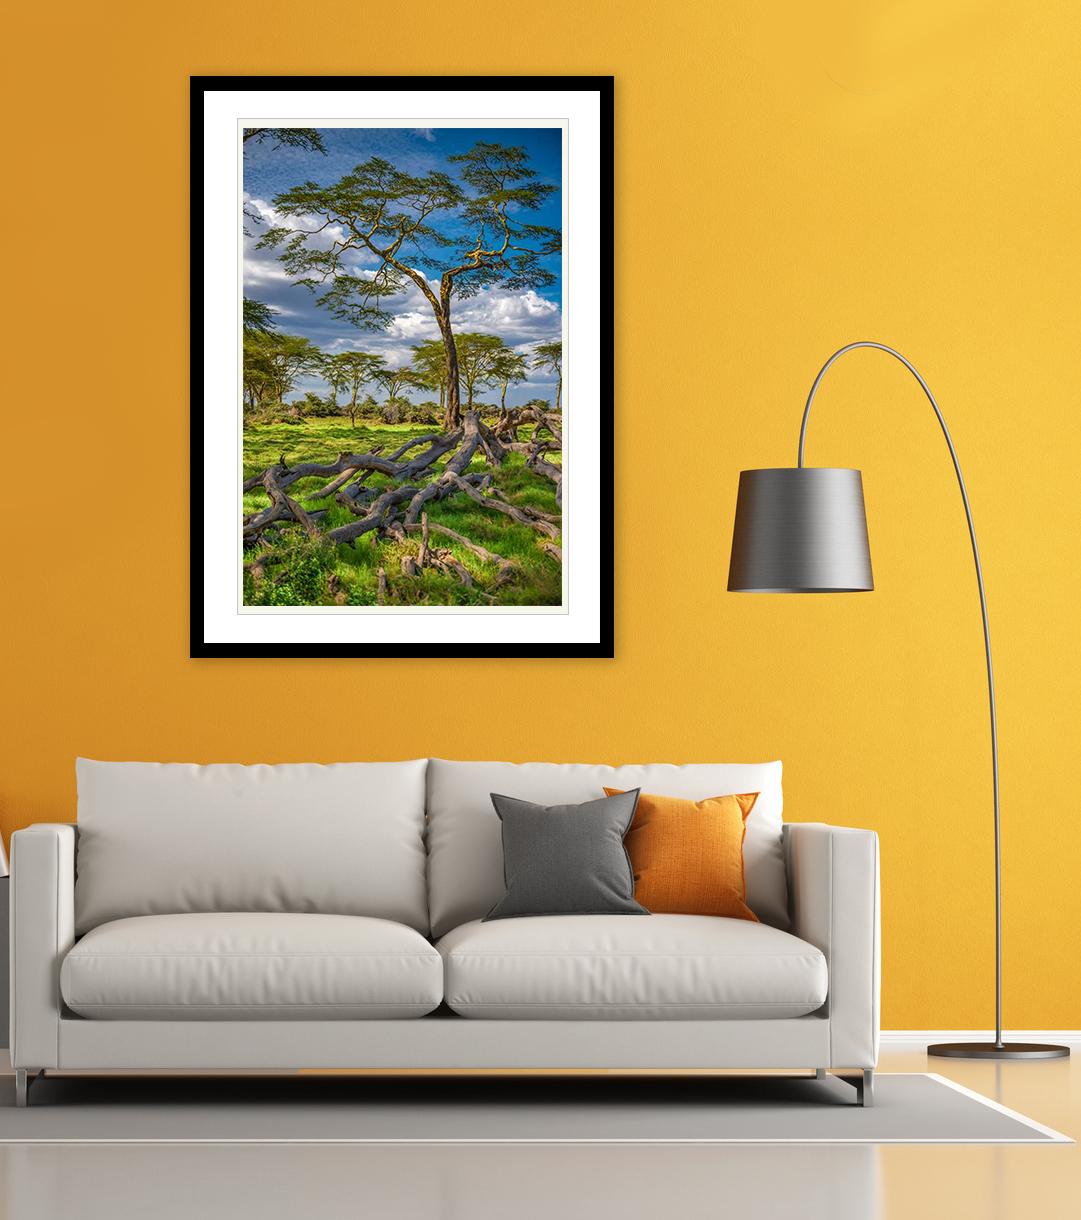 Ce cliché réalisé par le photographe Viet Chu en 2016, il met en scène un Acacia jaune, avec un accent sur le vert pour l'herbe et les feuilles, en contraste avec le bleu dramatique du ciel.

Viet Chu voyage dans le monde entier pour des missions